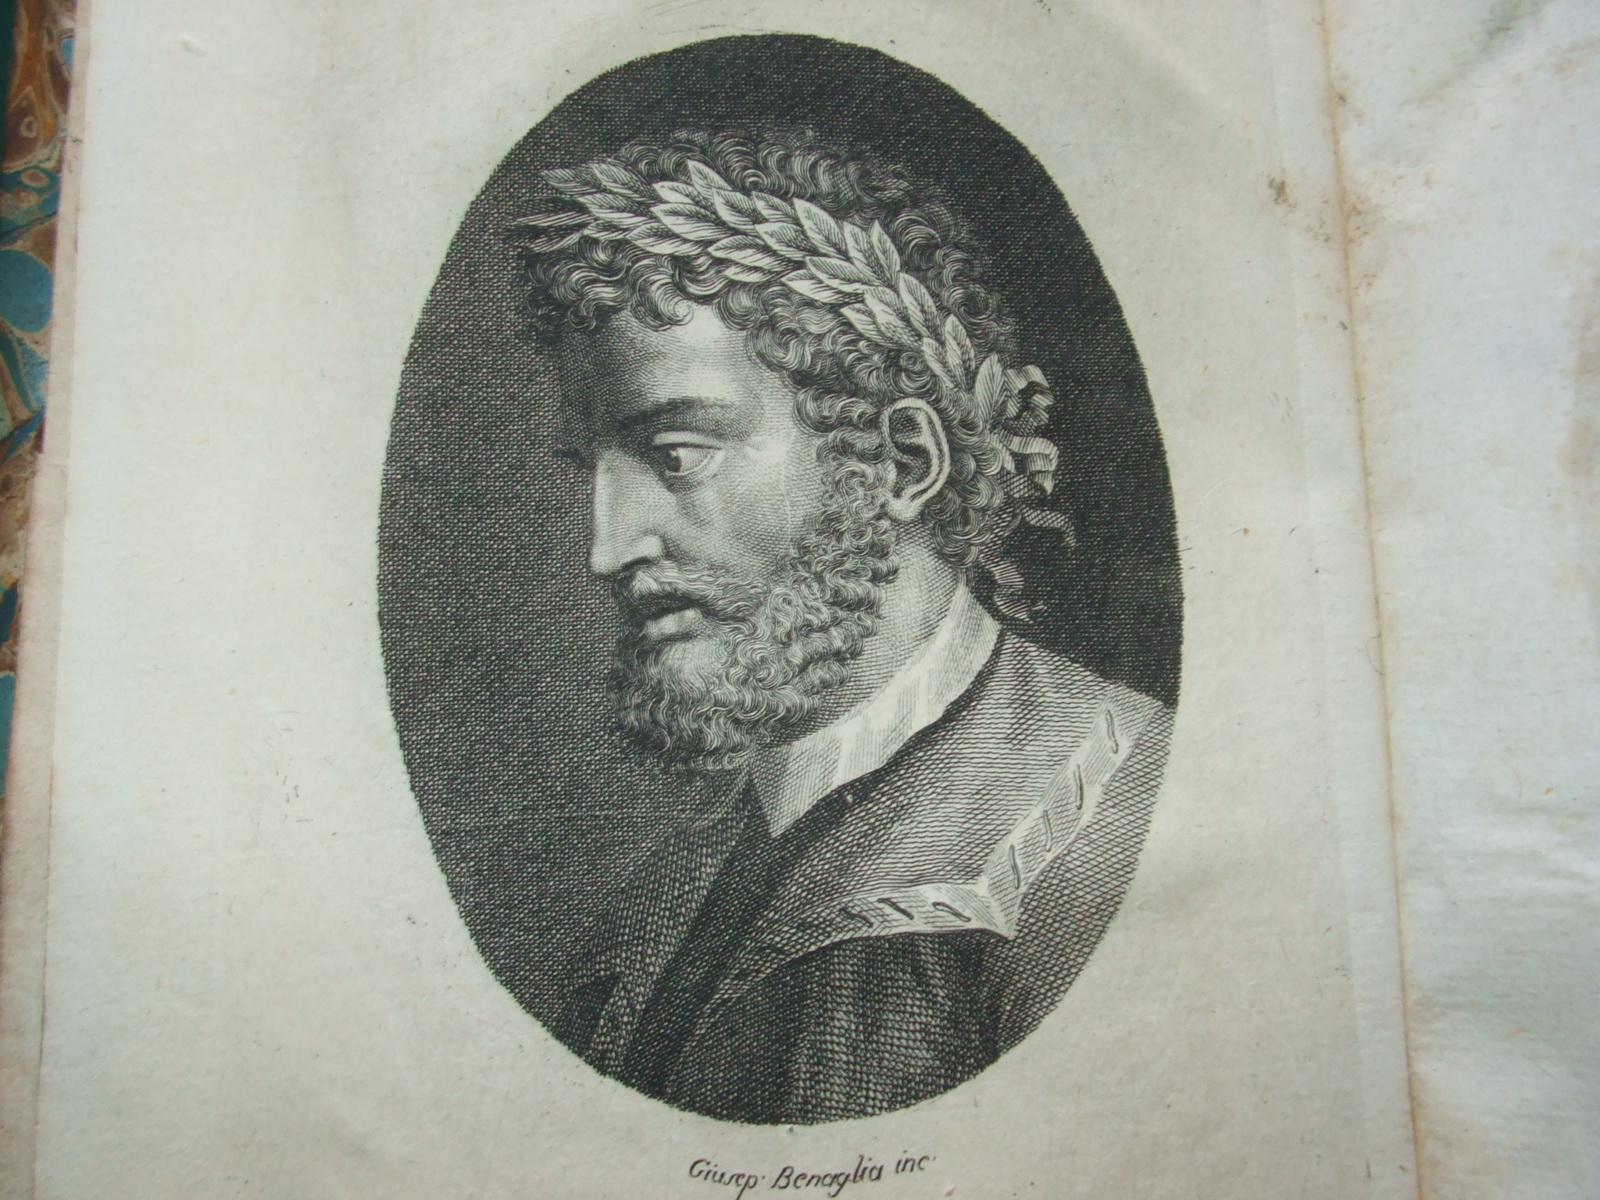 Le Metamorfosi di Ovidio by Giovanni Andrea Dell'Anguillara